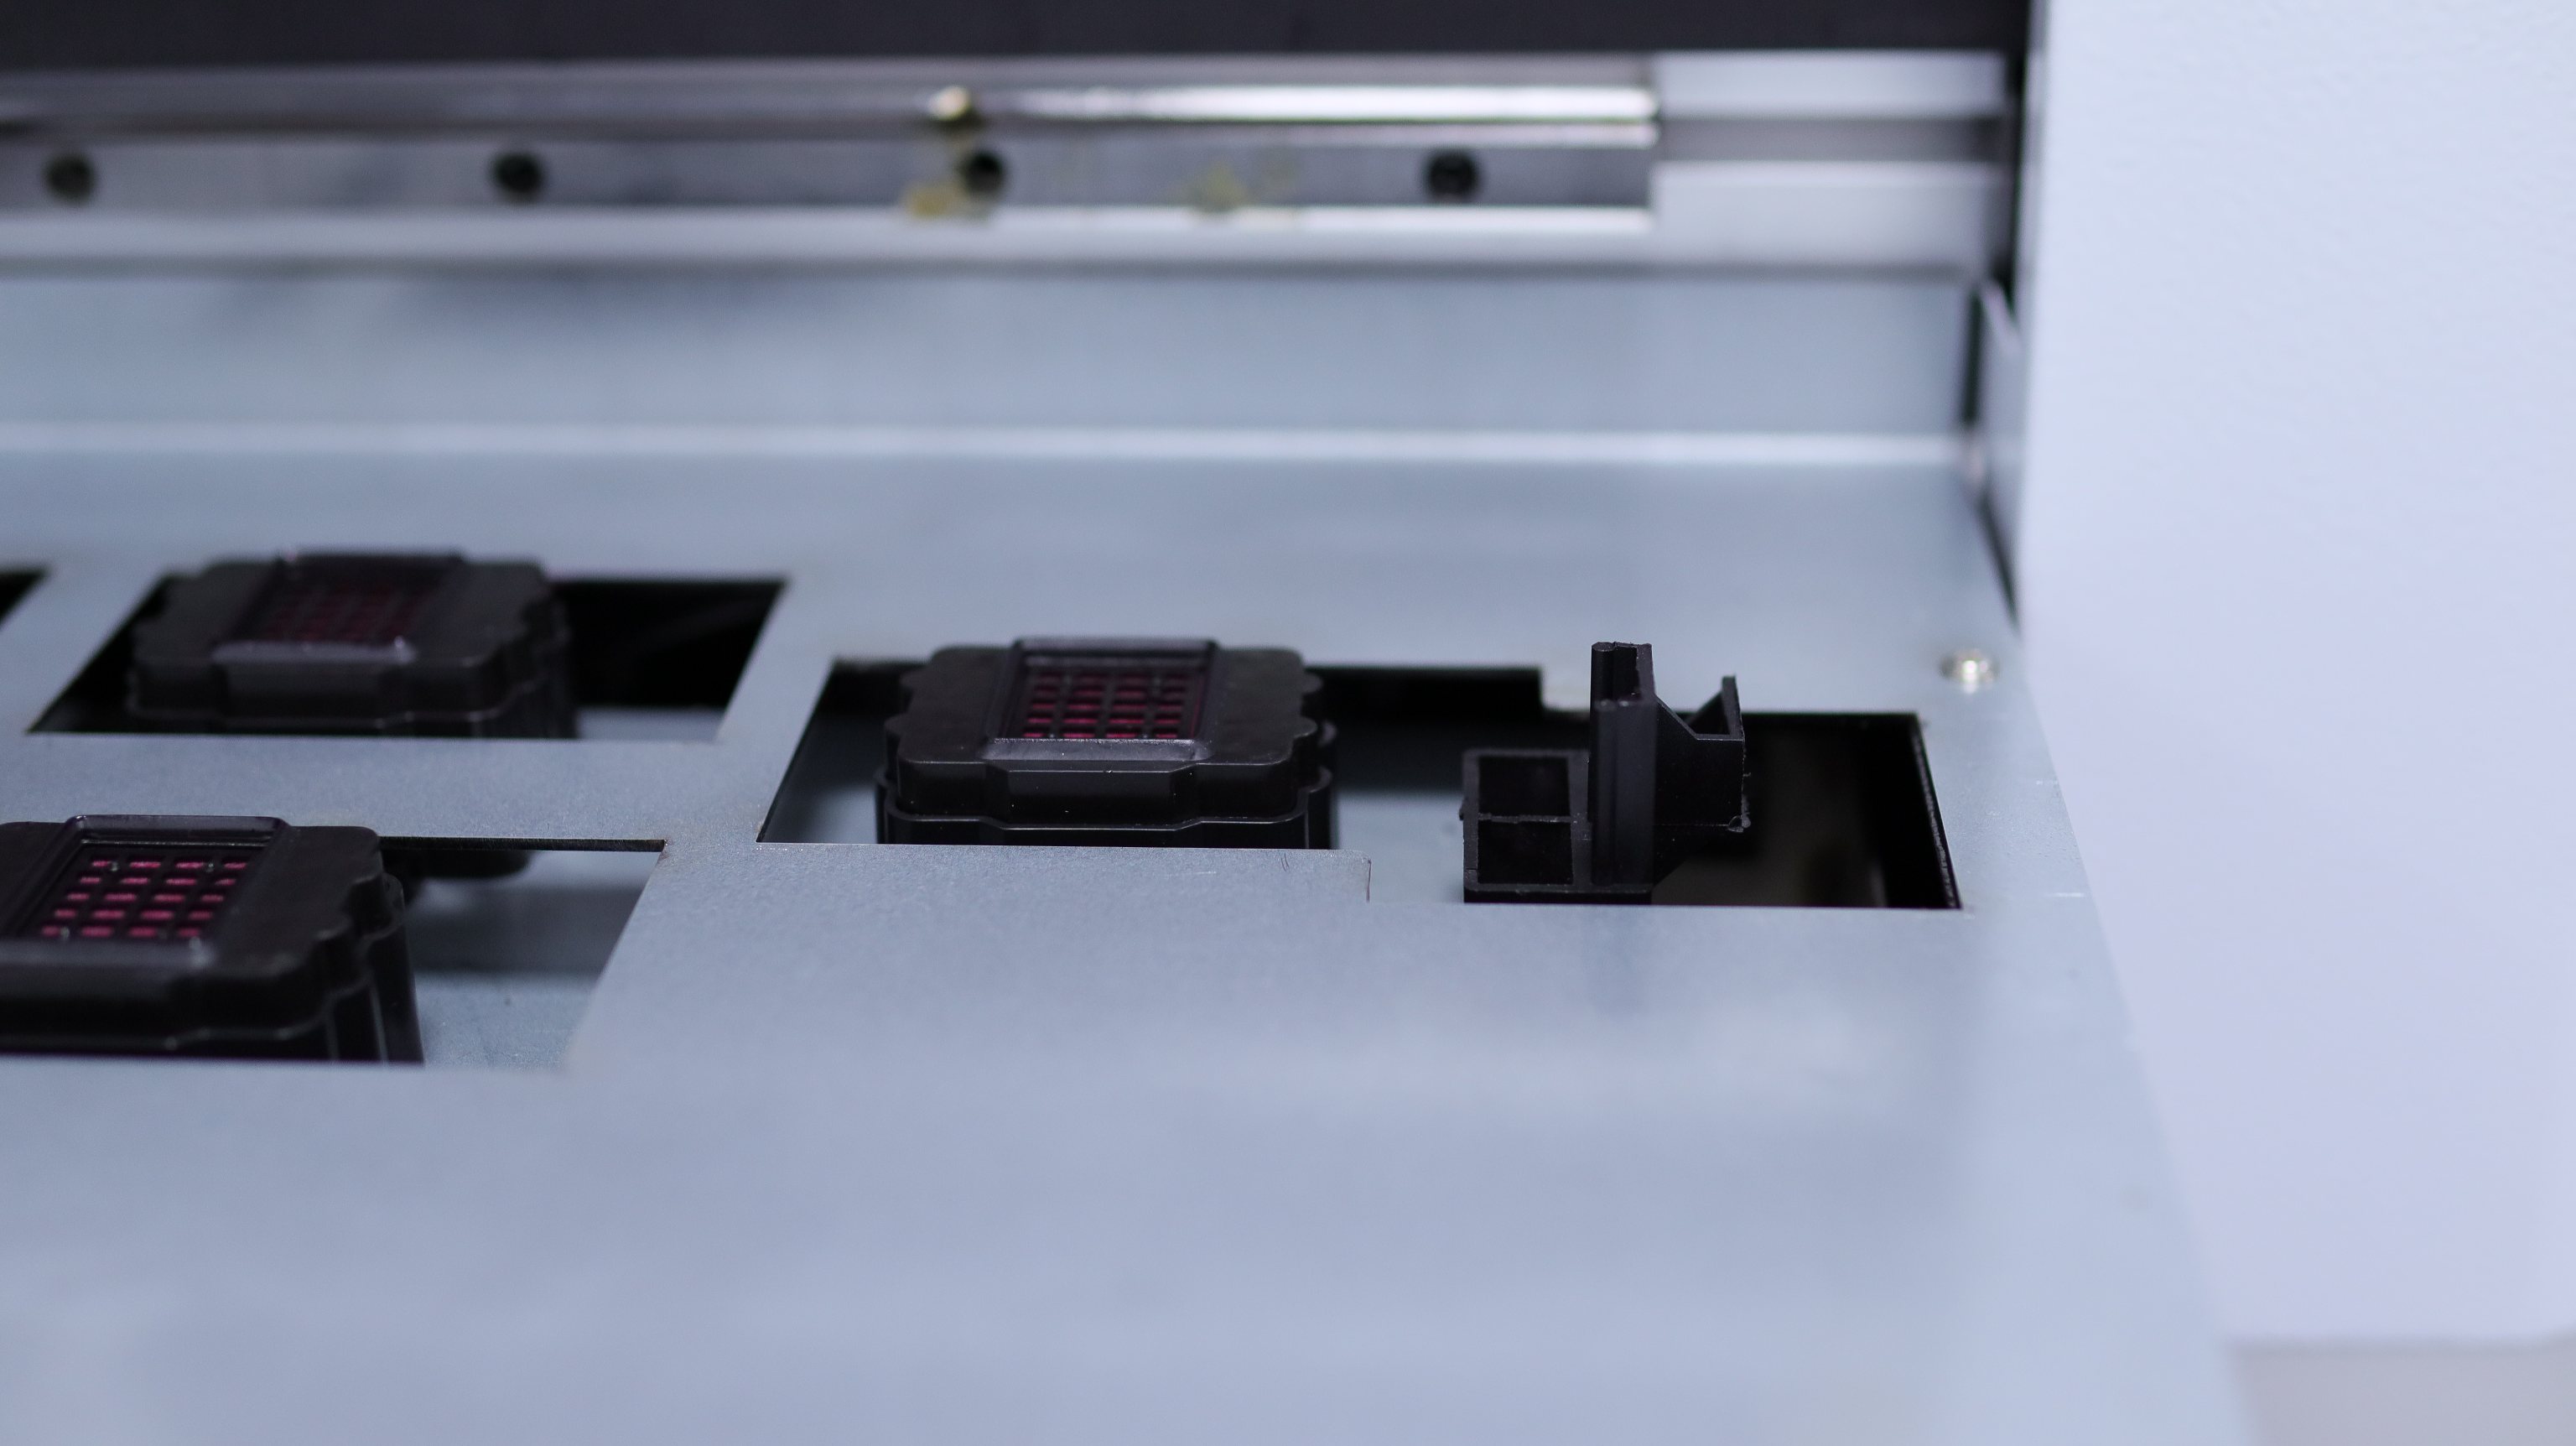 impresora plana a2 5070 uv (7)